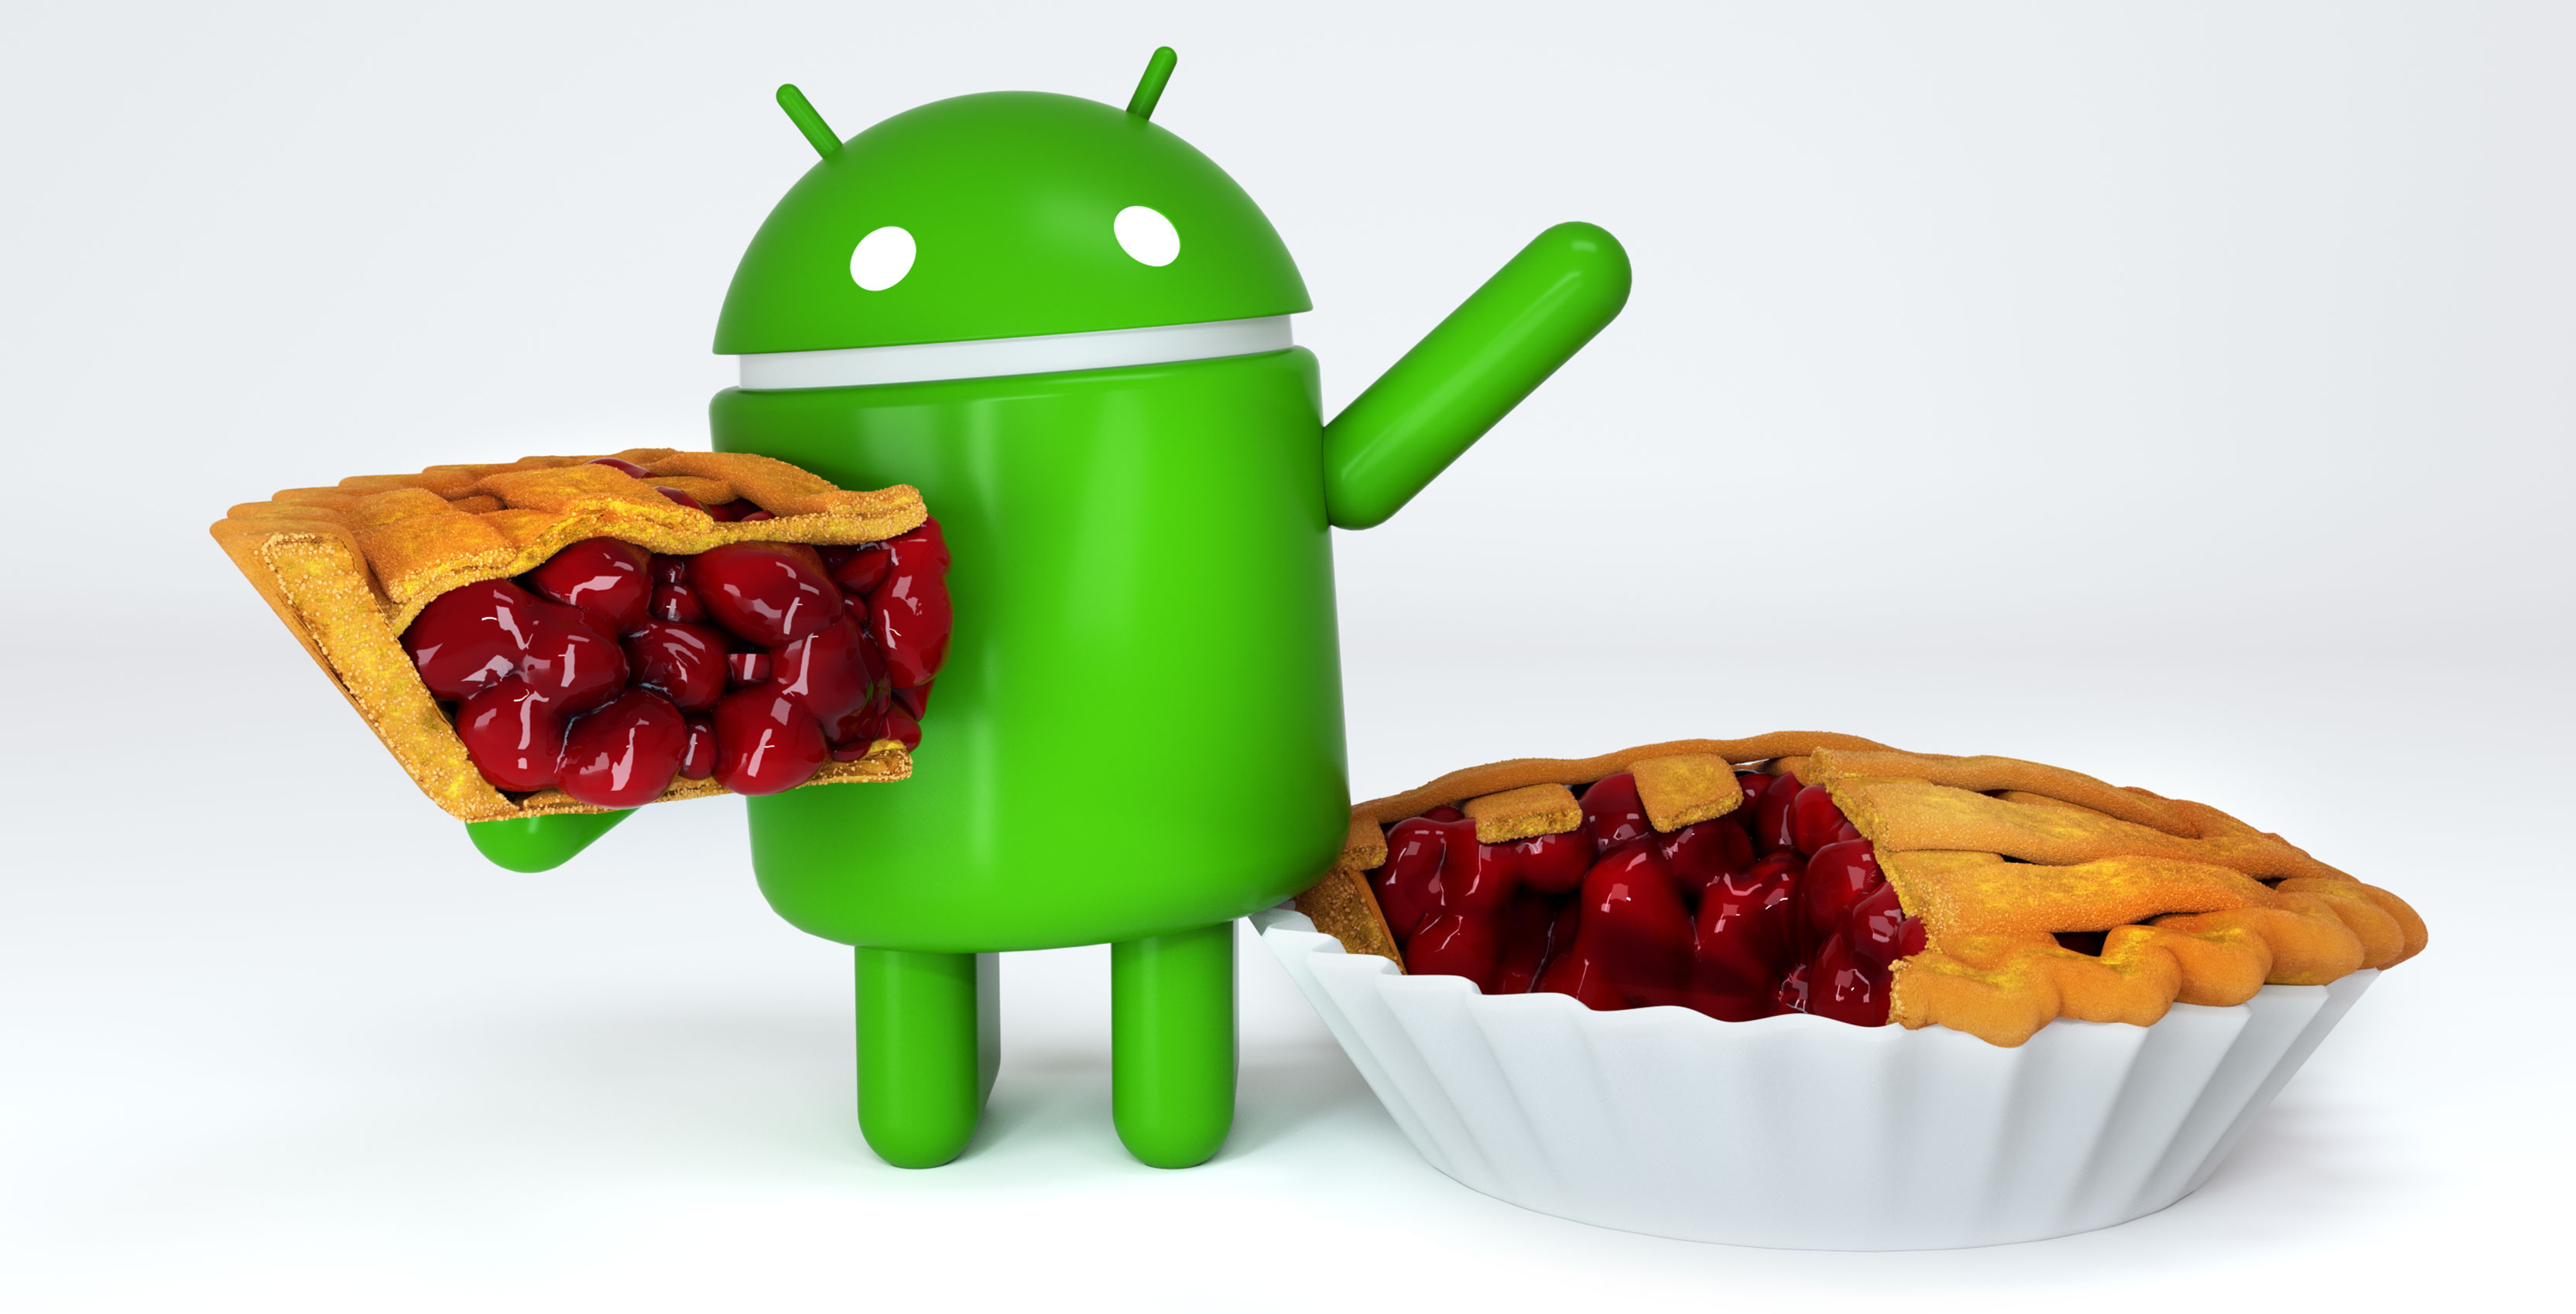 Megjött az Android 9 Pie, kár, hogy még az előzőt sem töltötte le senki